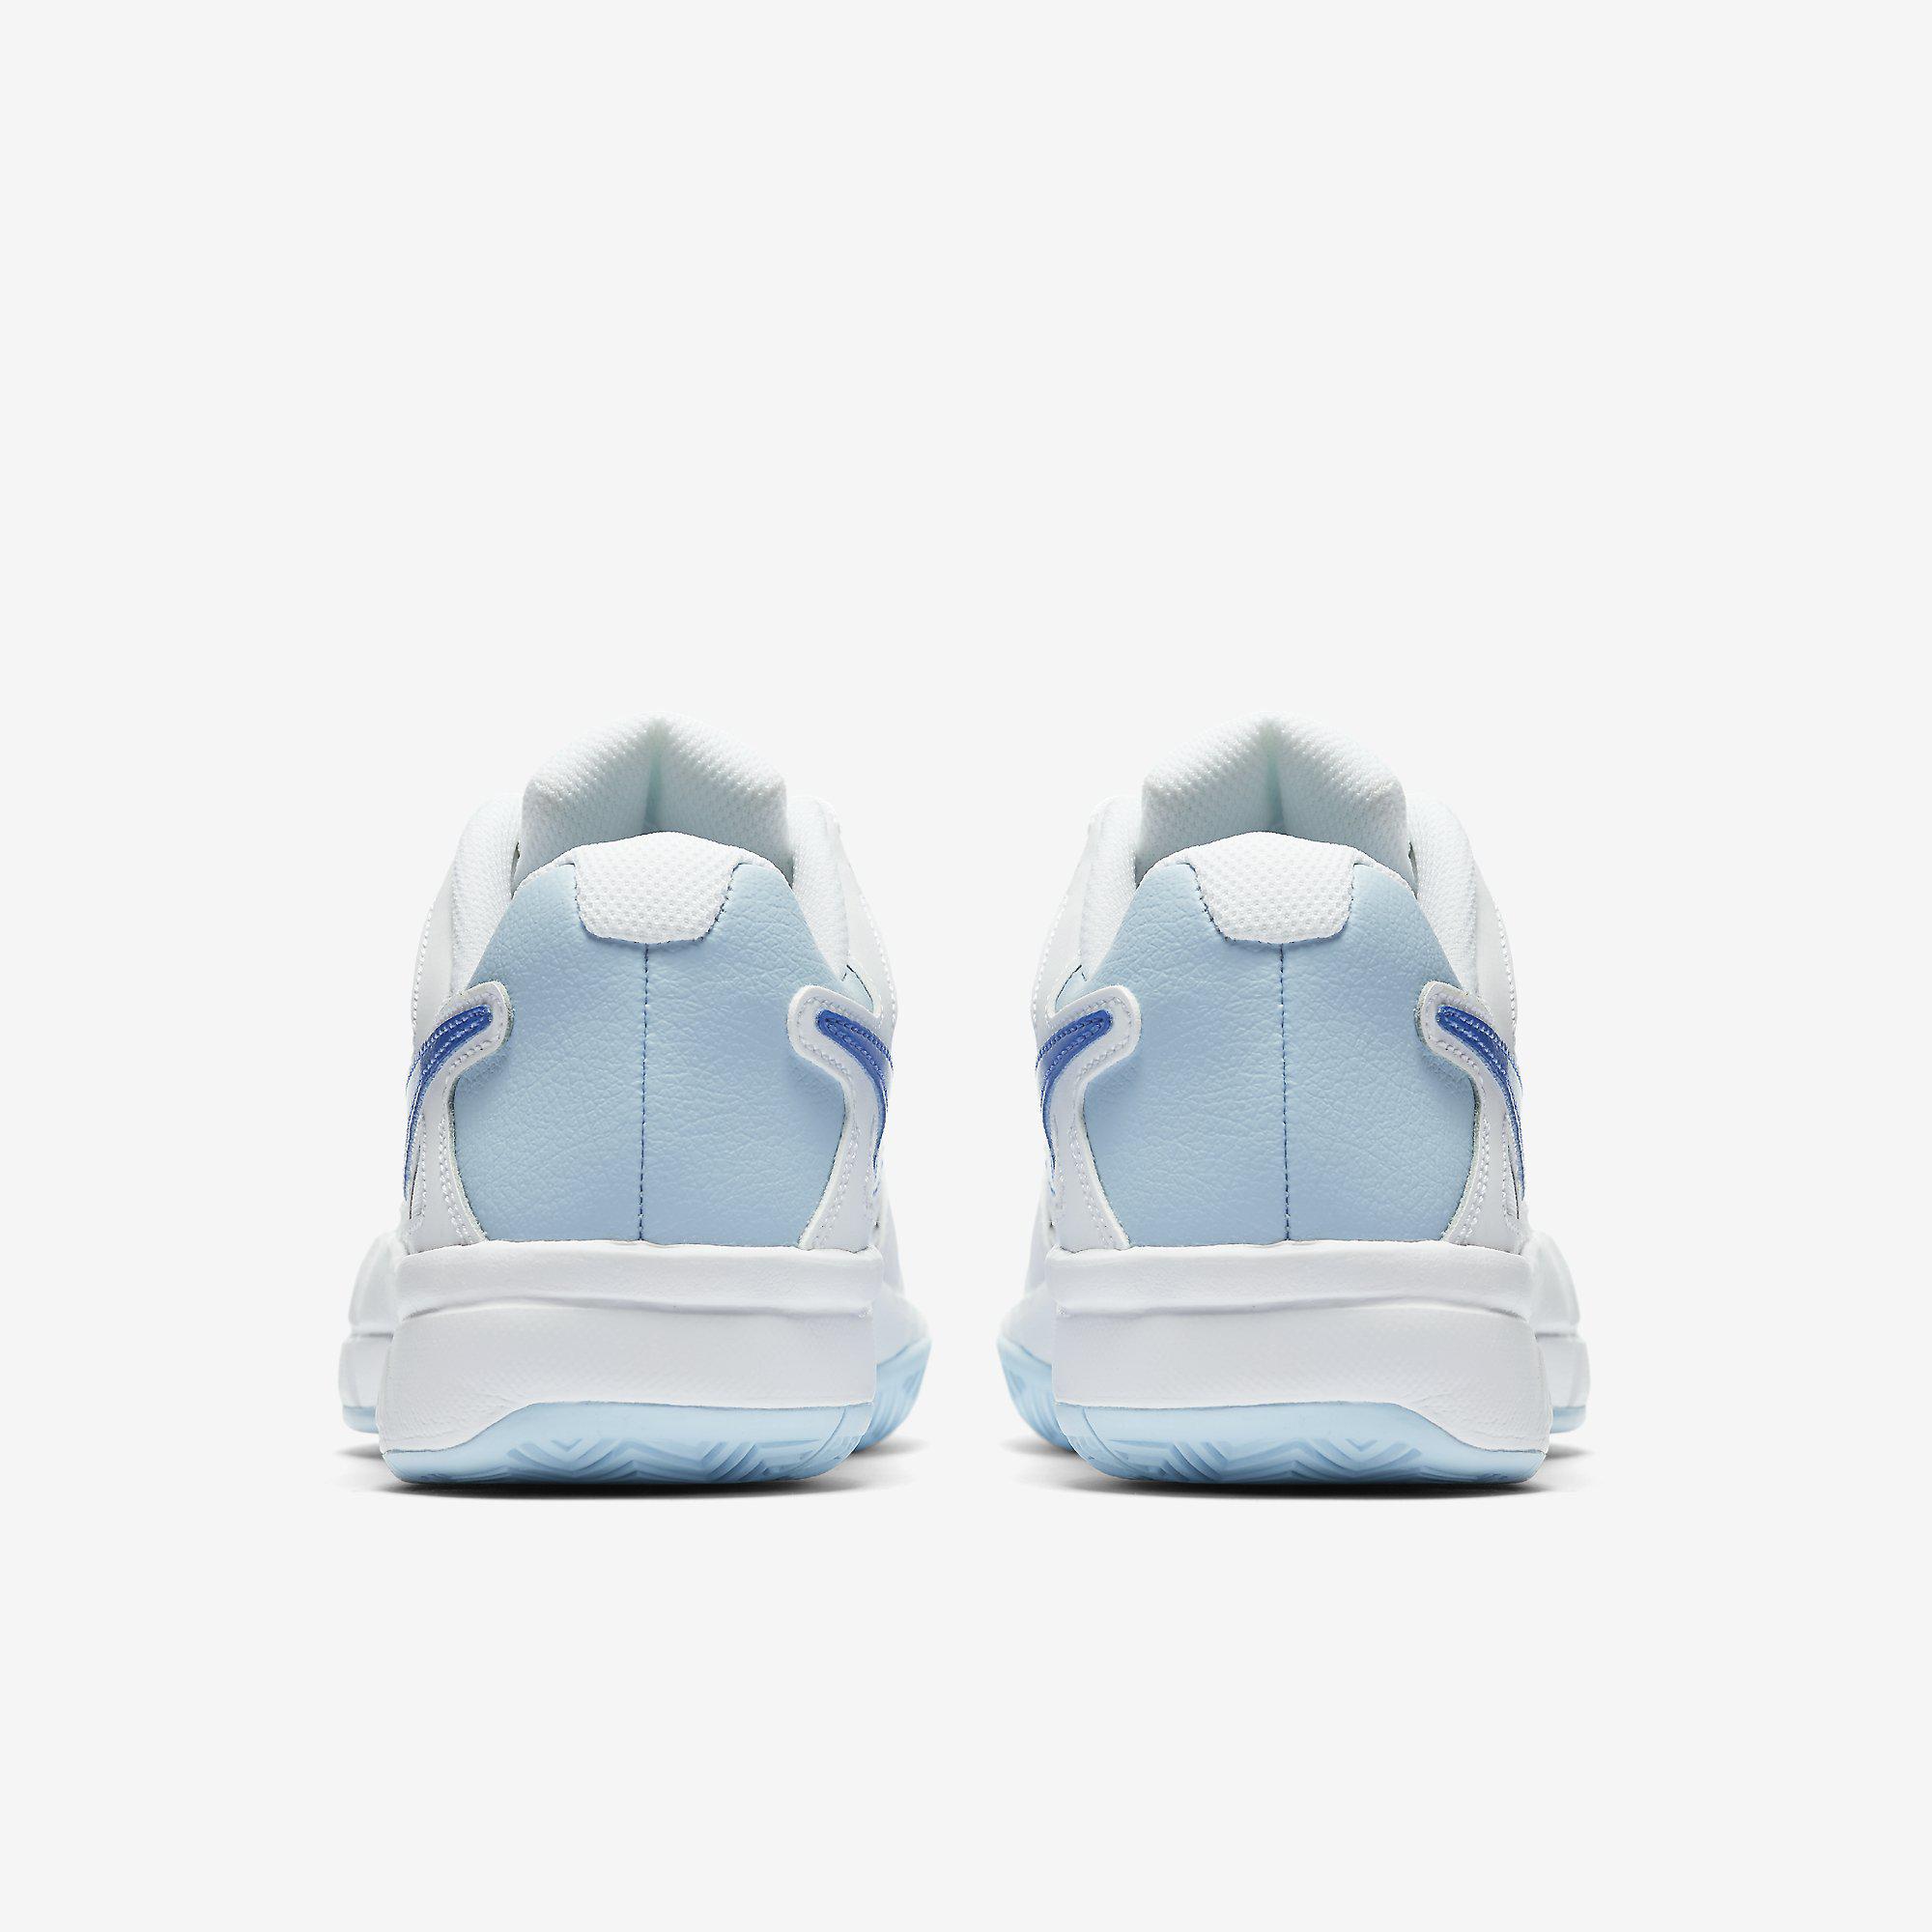 Nike Womens Air Vapor Advantage Tennis Shoes - White/Blue - Tennisnuts.com